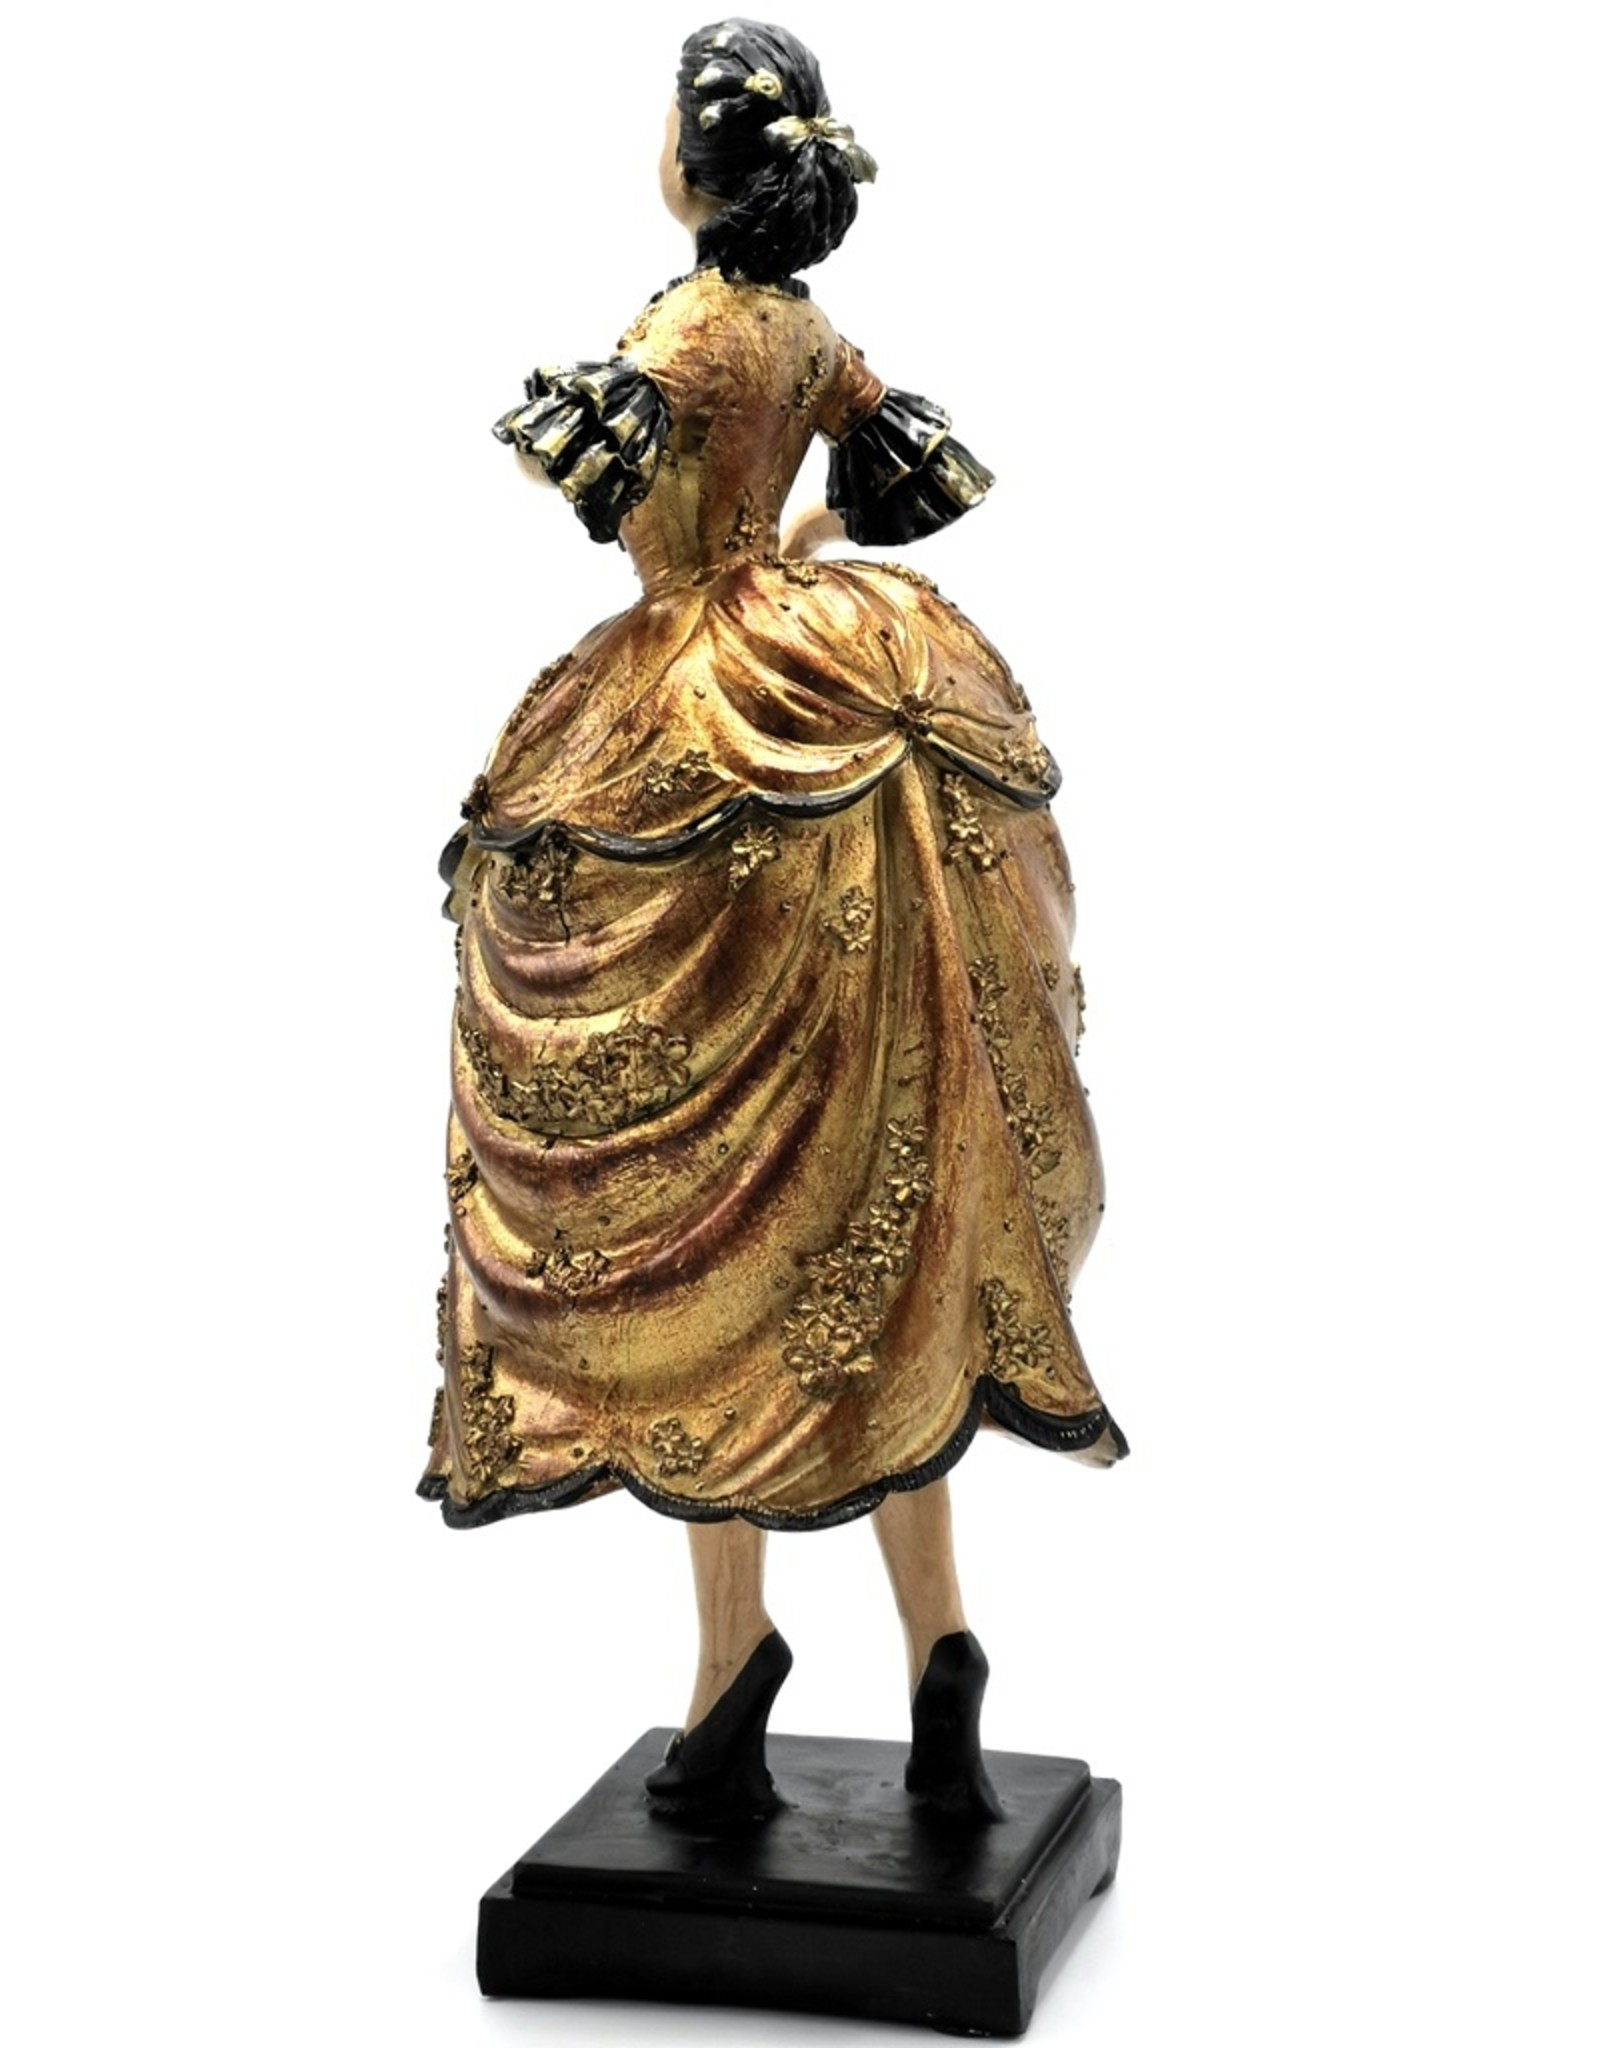 Dutch Style Giftware & Lifestyle - Ballet Dancer Renaissance Statue 44cm